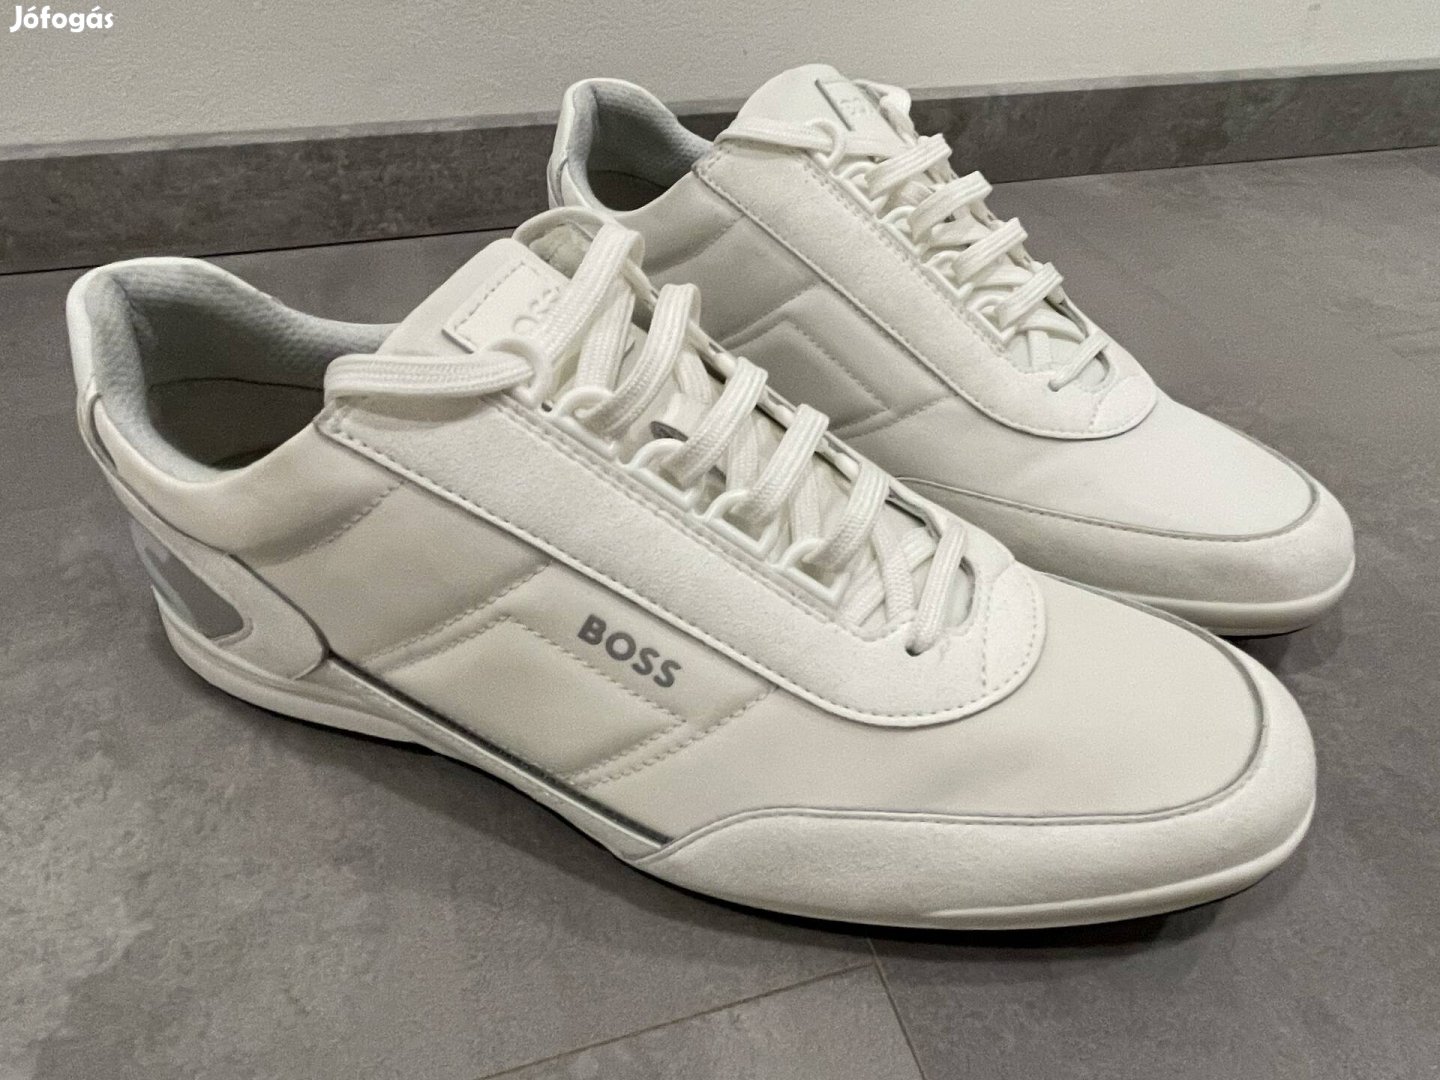 Eladva Új Boss Saturn Nylon edző cipő 42-es eladó